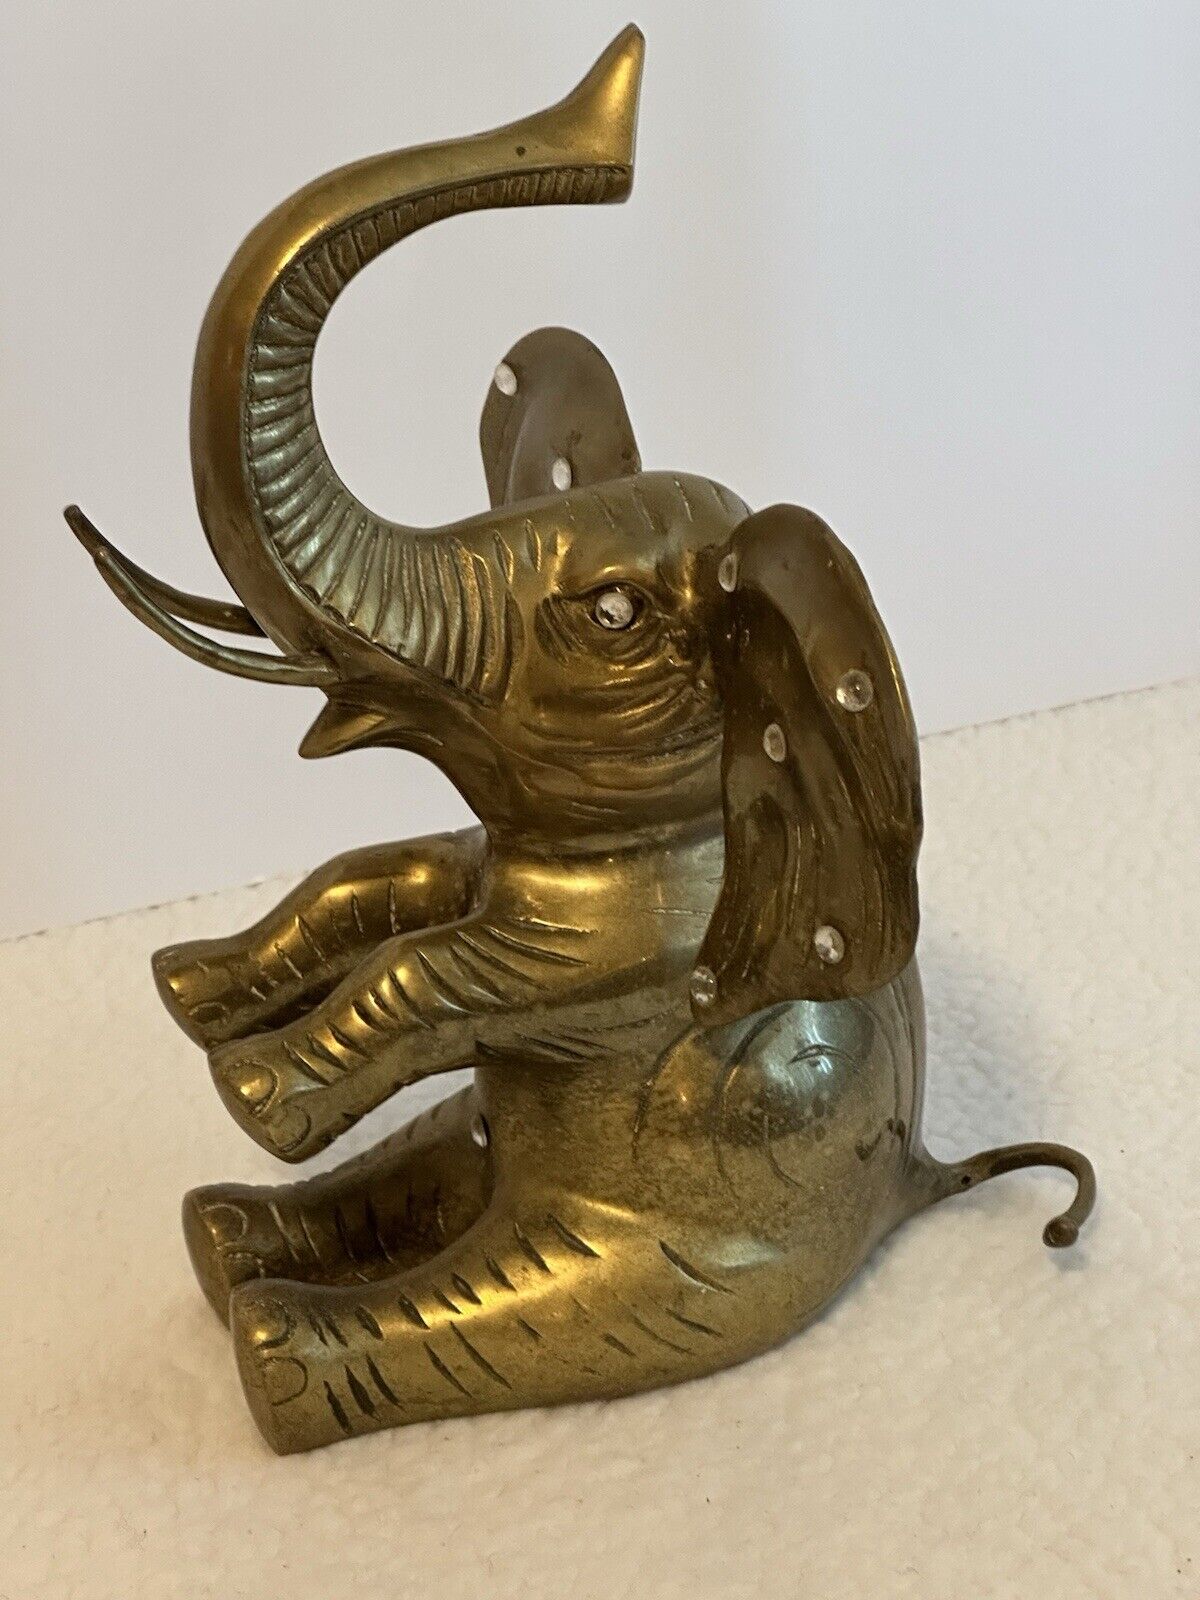 VTG Large Brass BABY ELEPHANT SCULPTURE 13” Figurine / Door Stop India